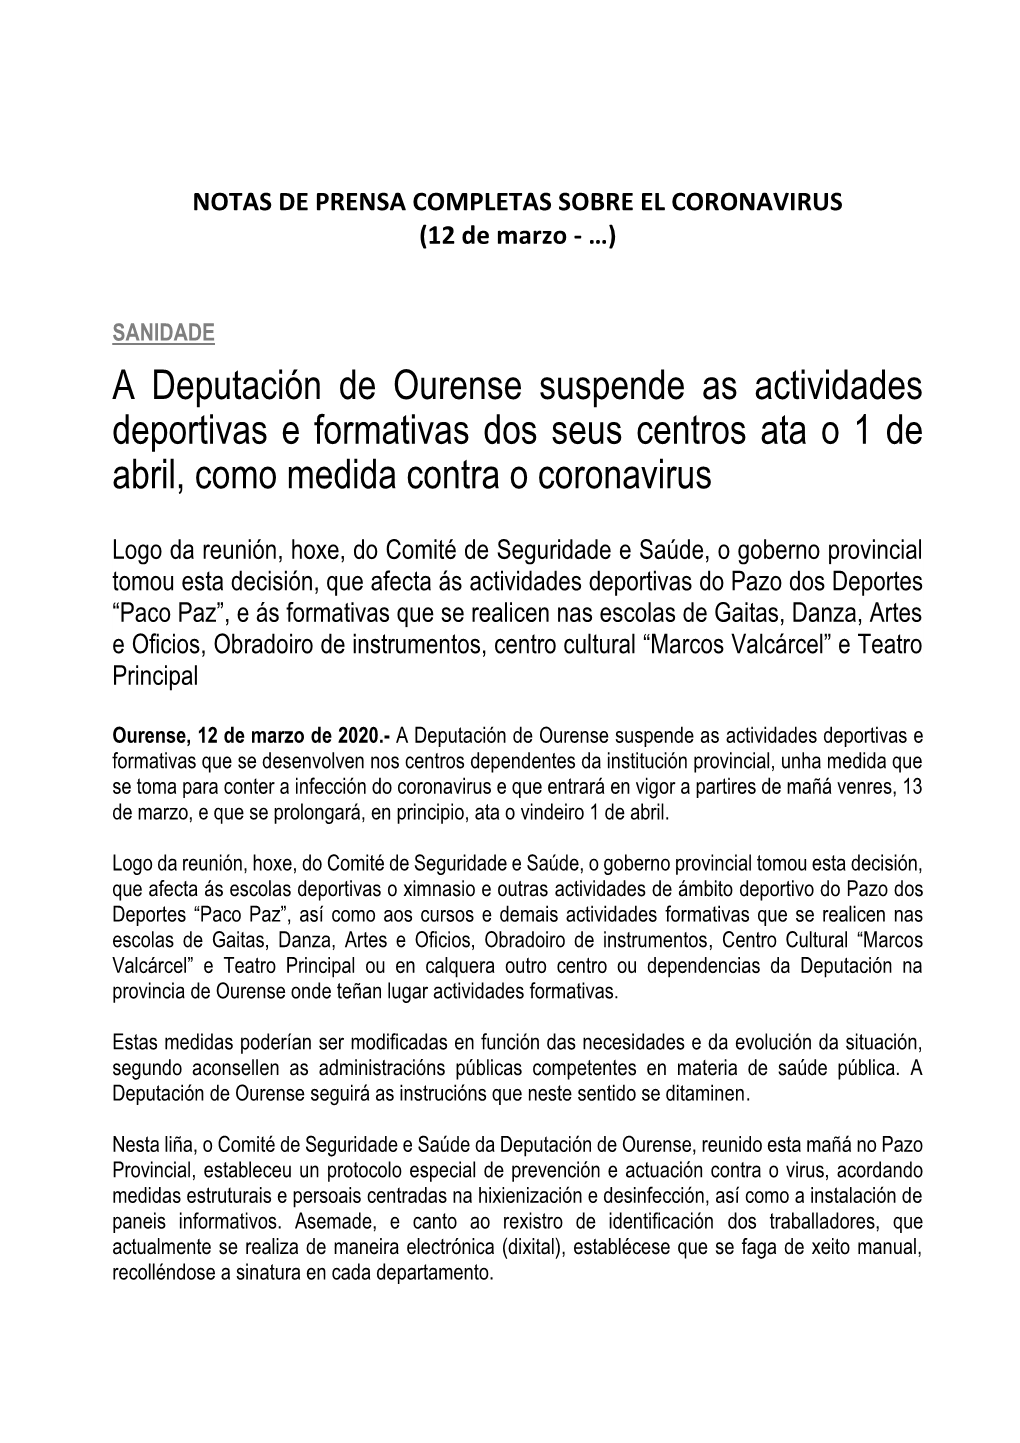 A Deputación De Ourense Suspende As Actividades Deportivas E Formativas Dos Seus Centros Ata O 1 De Abril, Como Medida Contra O Coronavirus